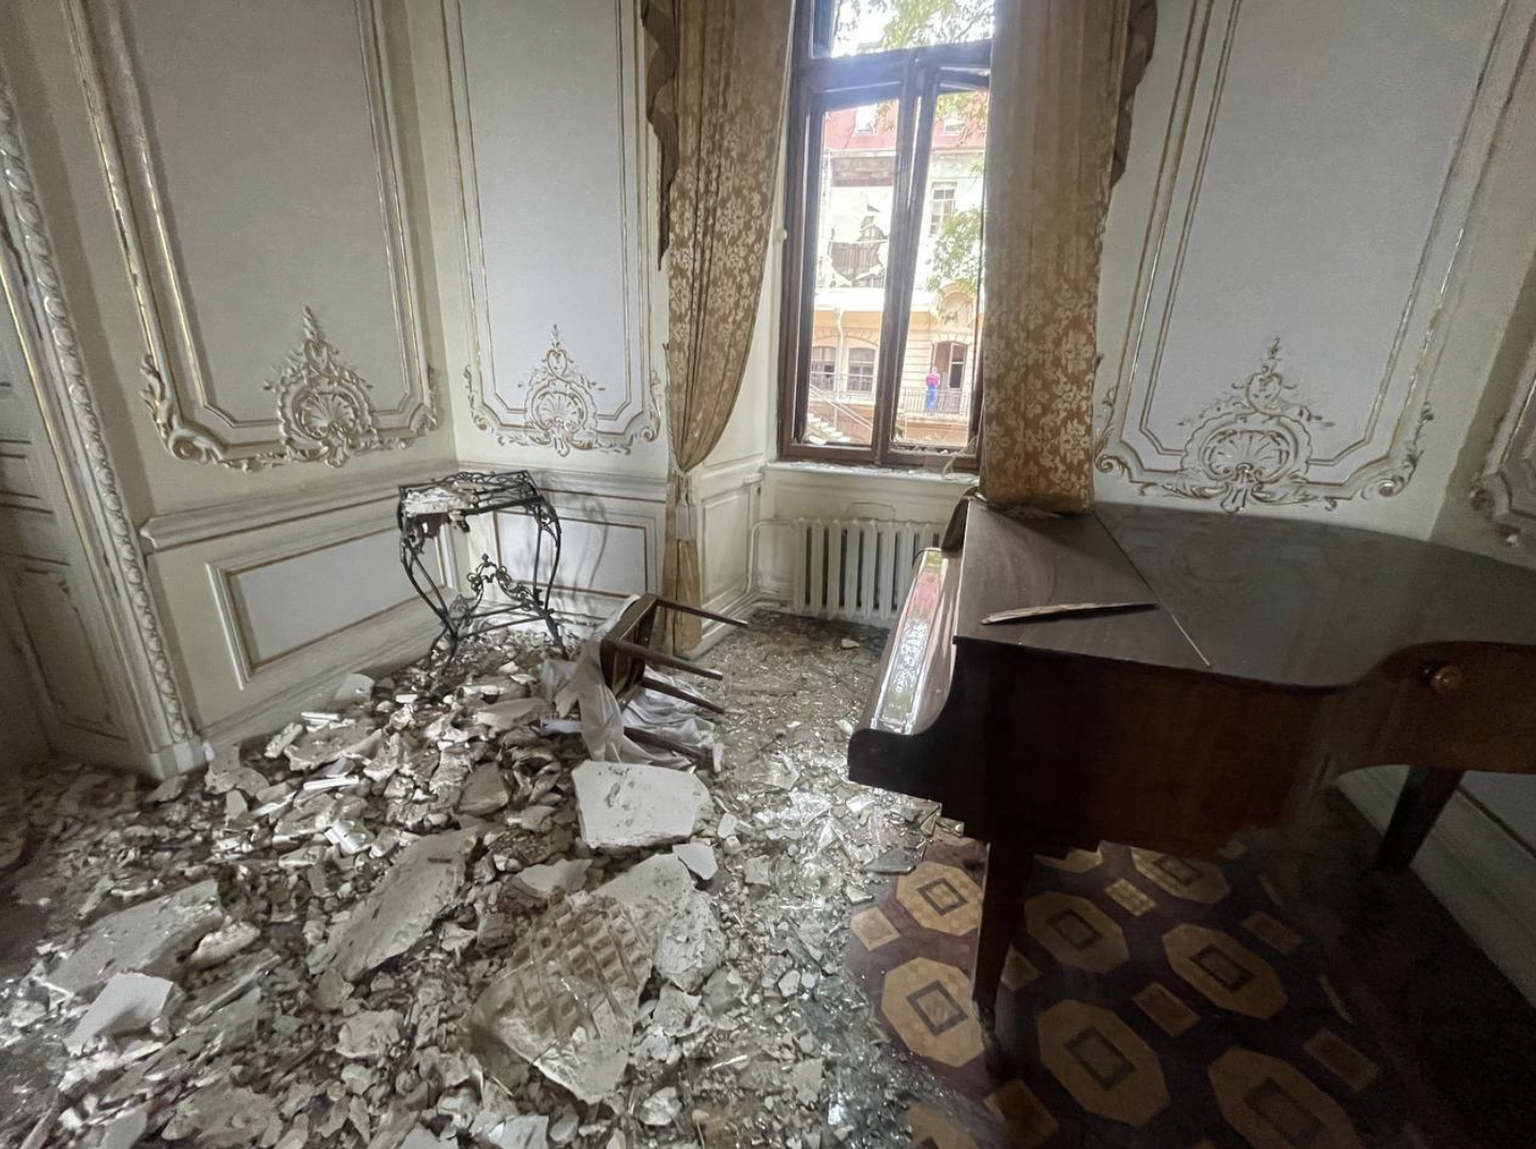 Neben der Kathedrale in Odessa wurde auch ein weiteres Baudenkmal beschädigt – das Haus der Wissenschaftler (Villa des Grafen Tolstoi).